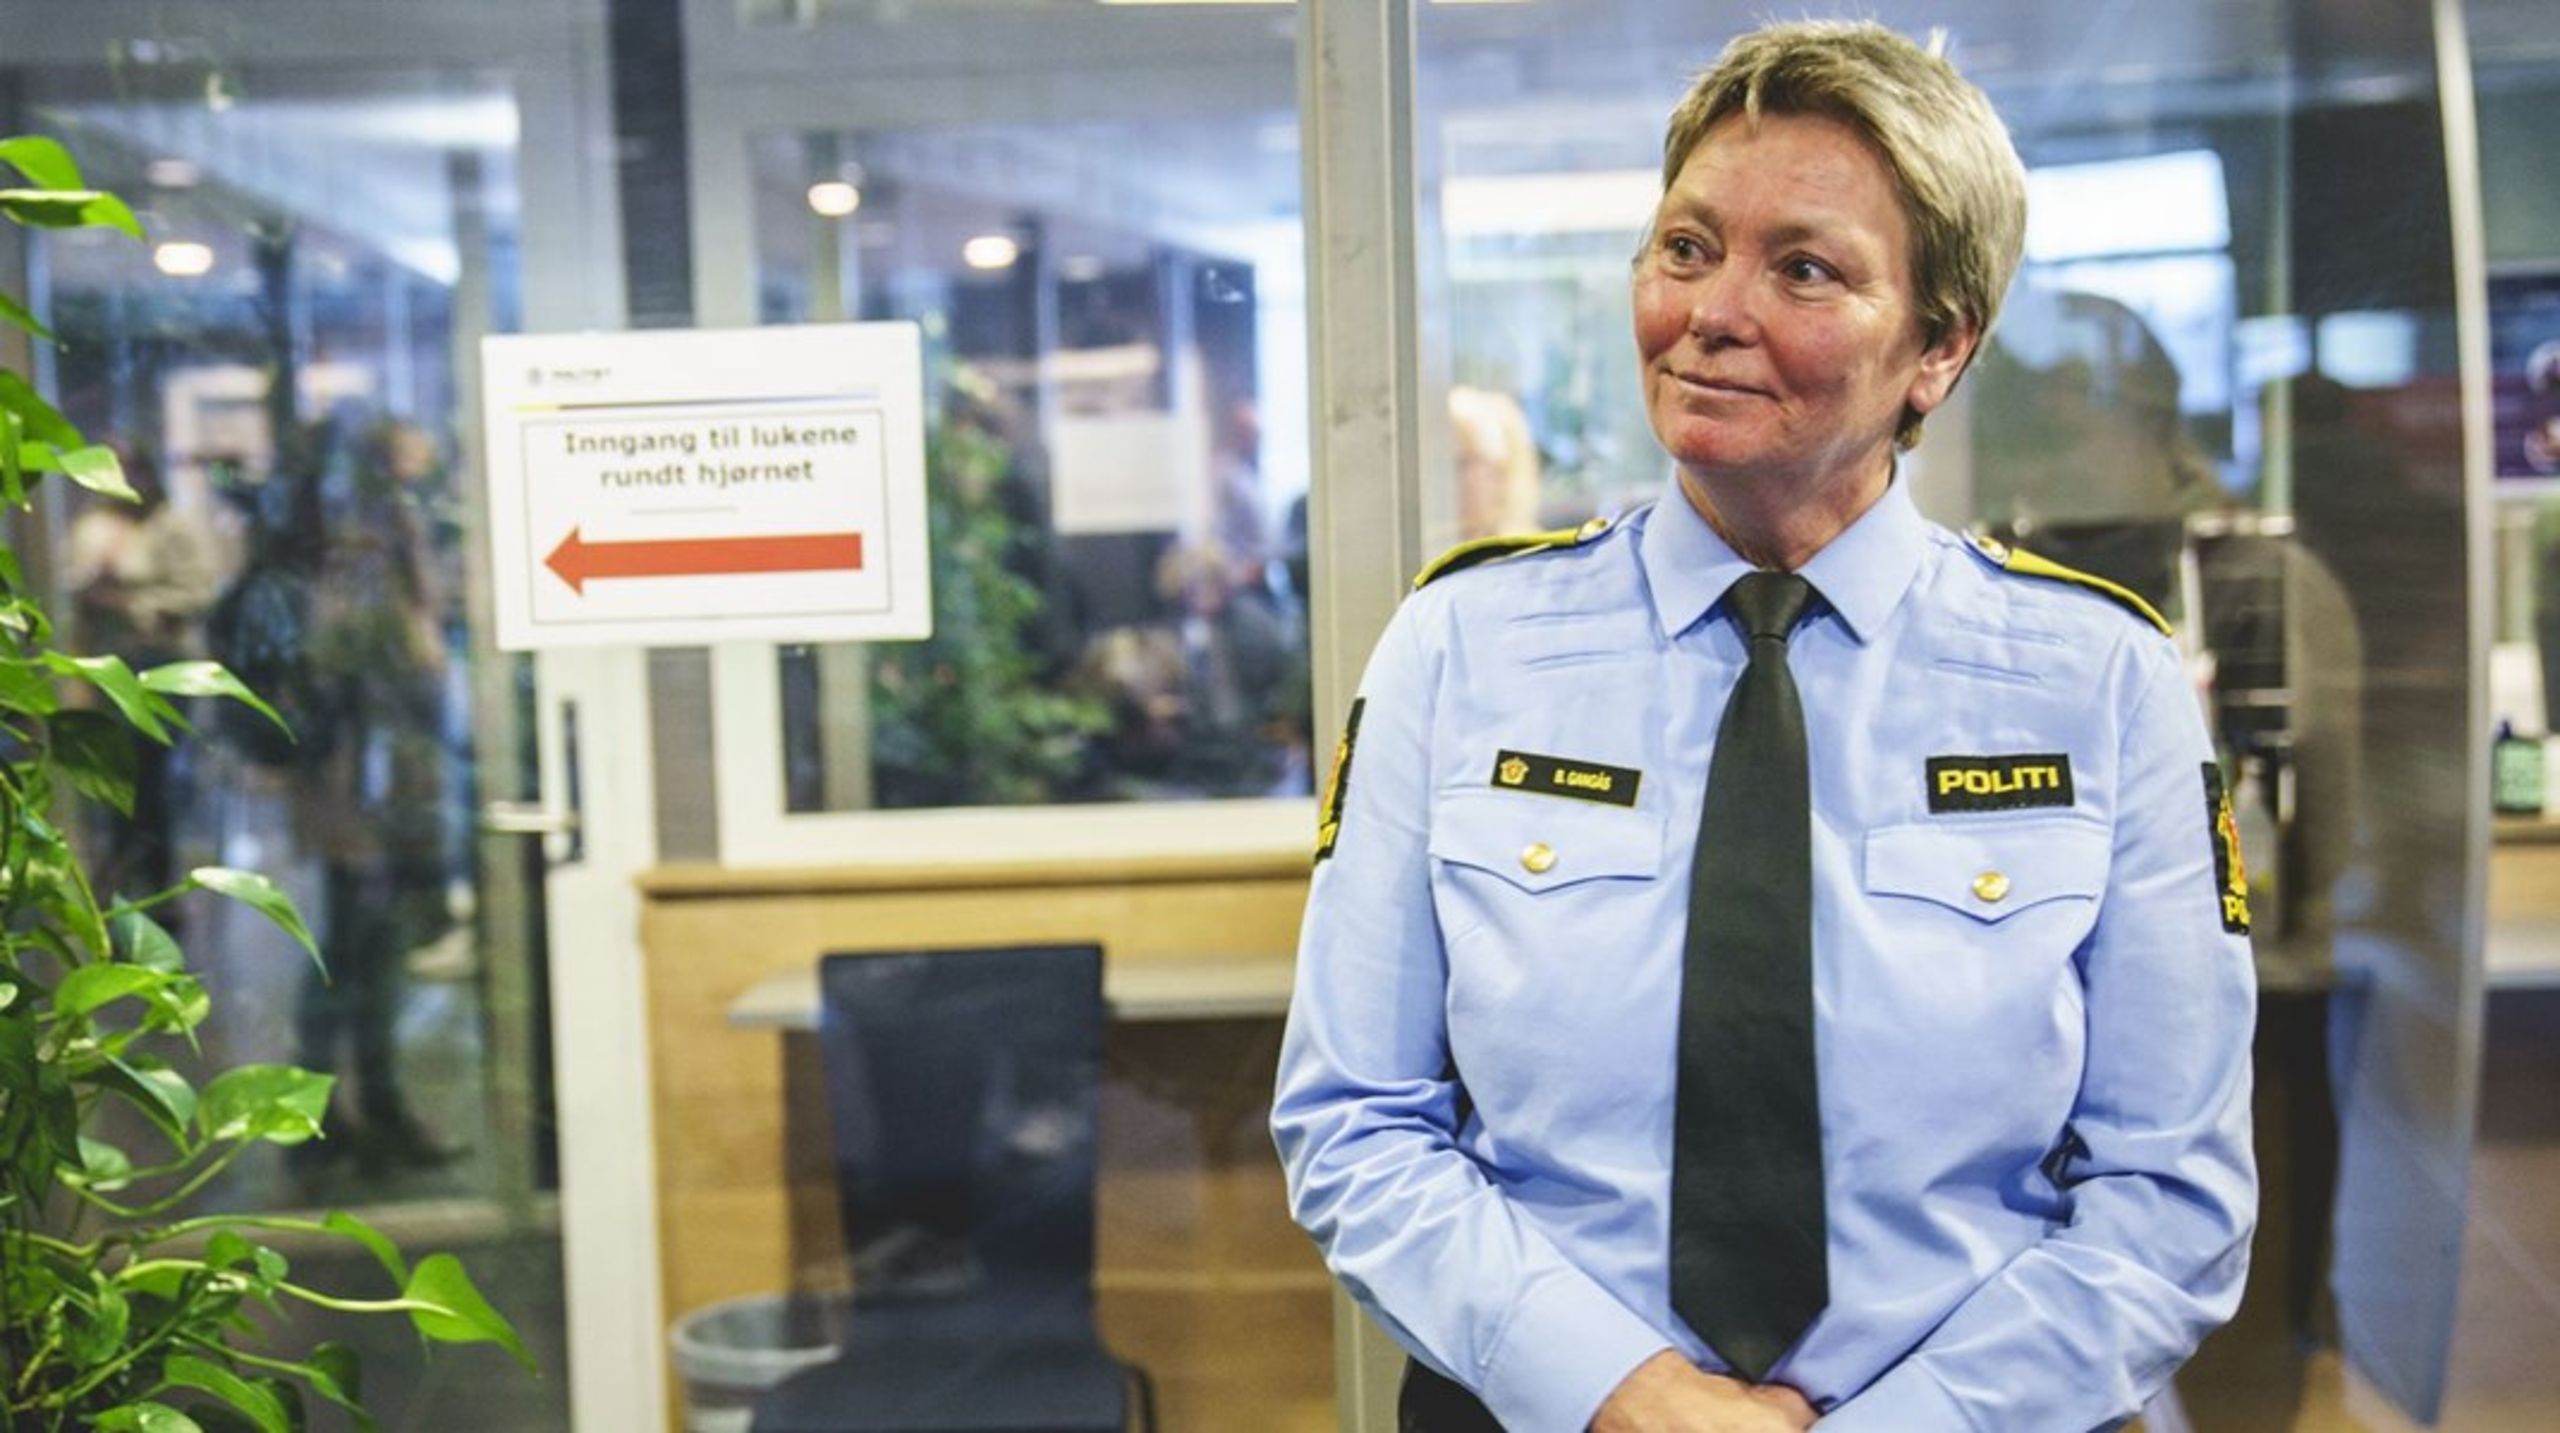 Beate Gangås på Stovner politistasjon, i rollen som politimester i Oslo. Nå er det klart at hun tiltrer i en ny rolle, som sjef for Politiets Sikkerhetstjeneste (PST).